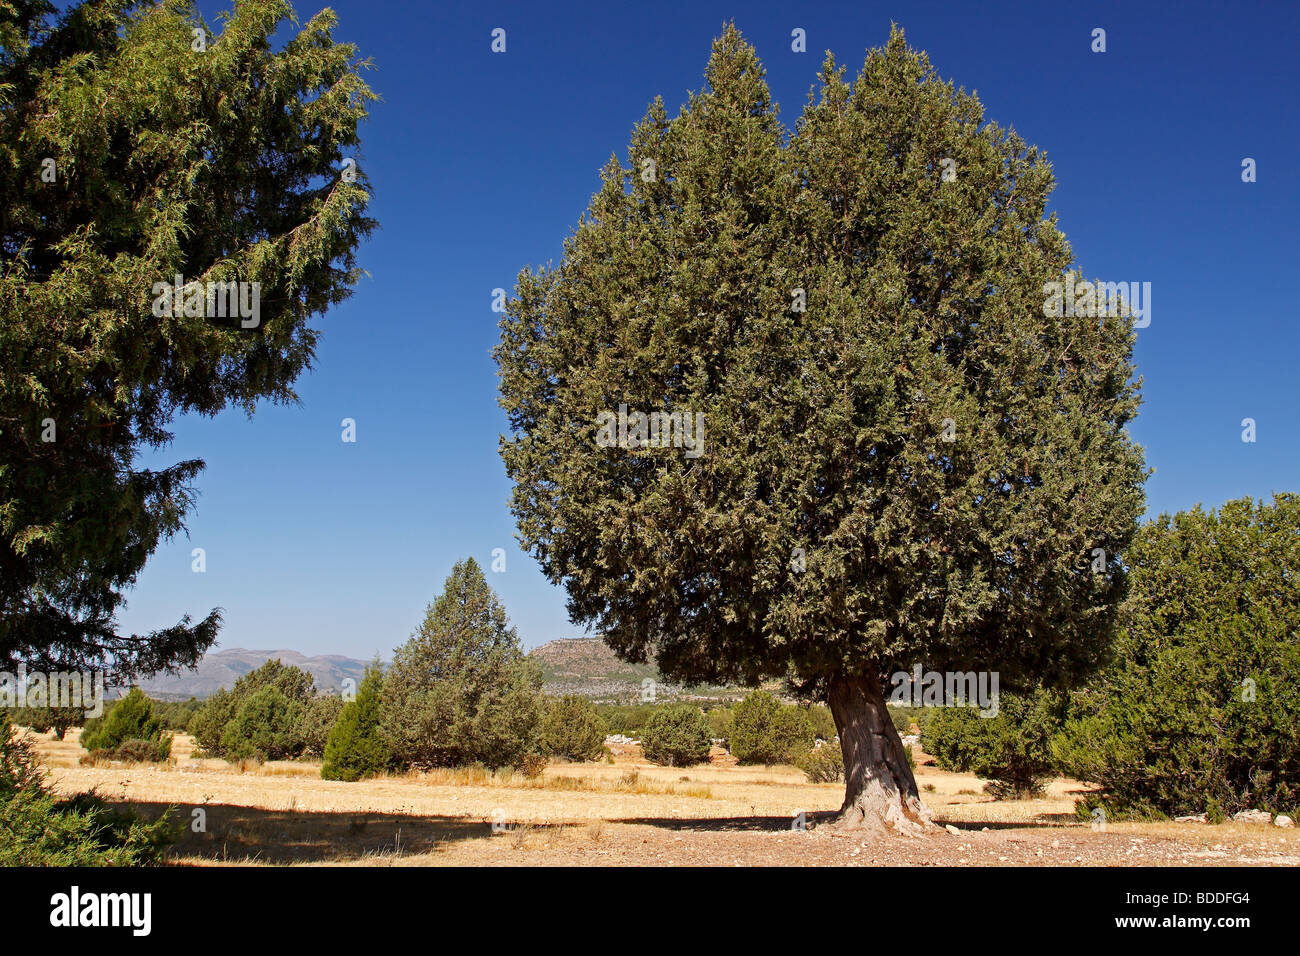 Spanish juniper, Juniperus thurifera. Nerpio, Albacete. Spain Stock Photo